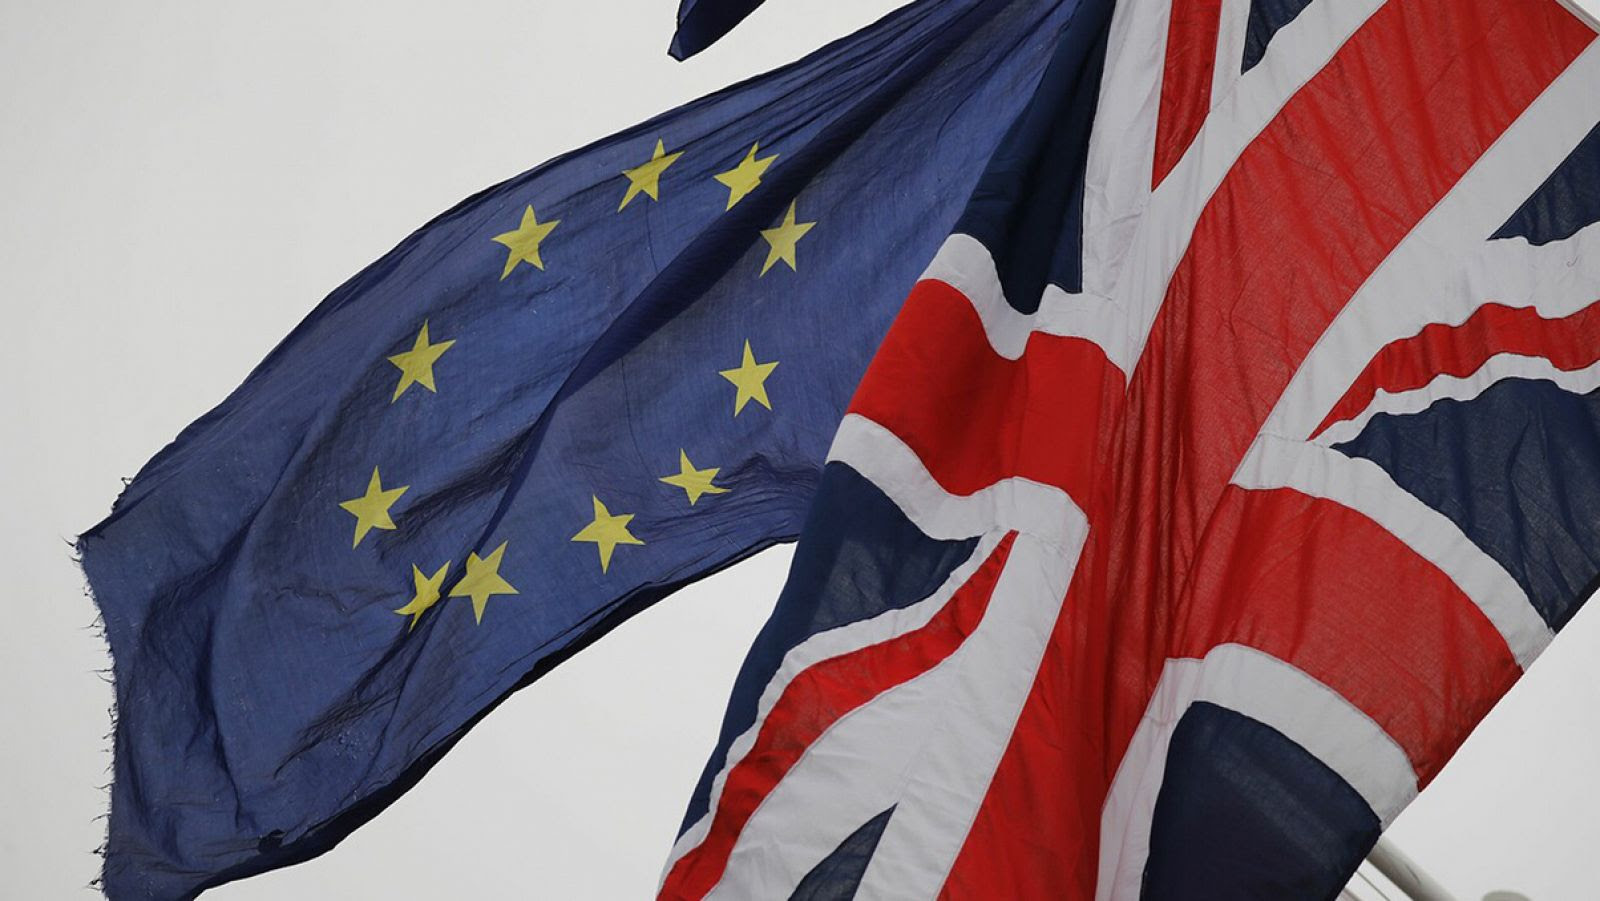 Banderas británica y de la UE frente al Parlamento británico. Tolga AKMEN / AFP